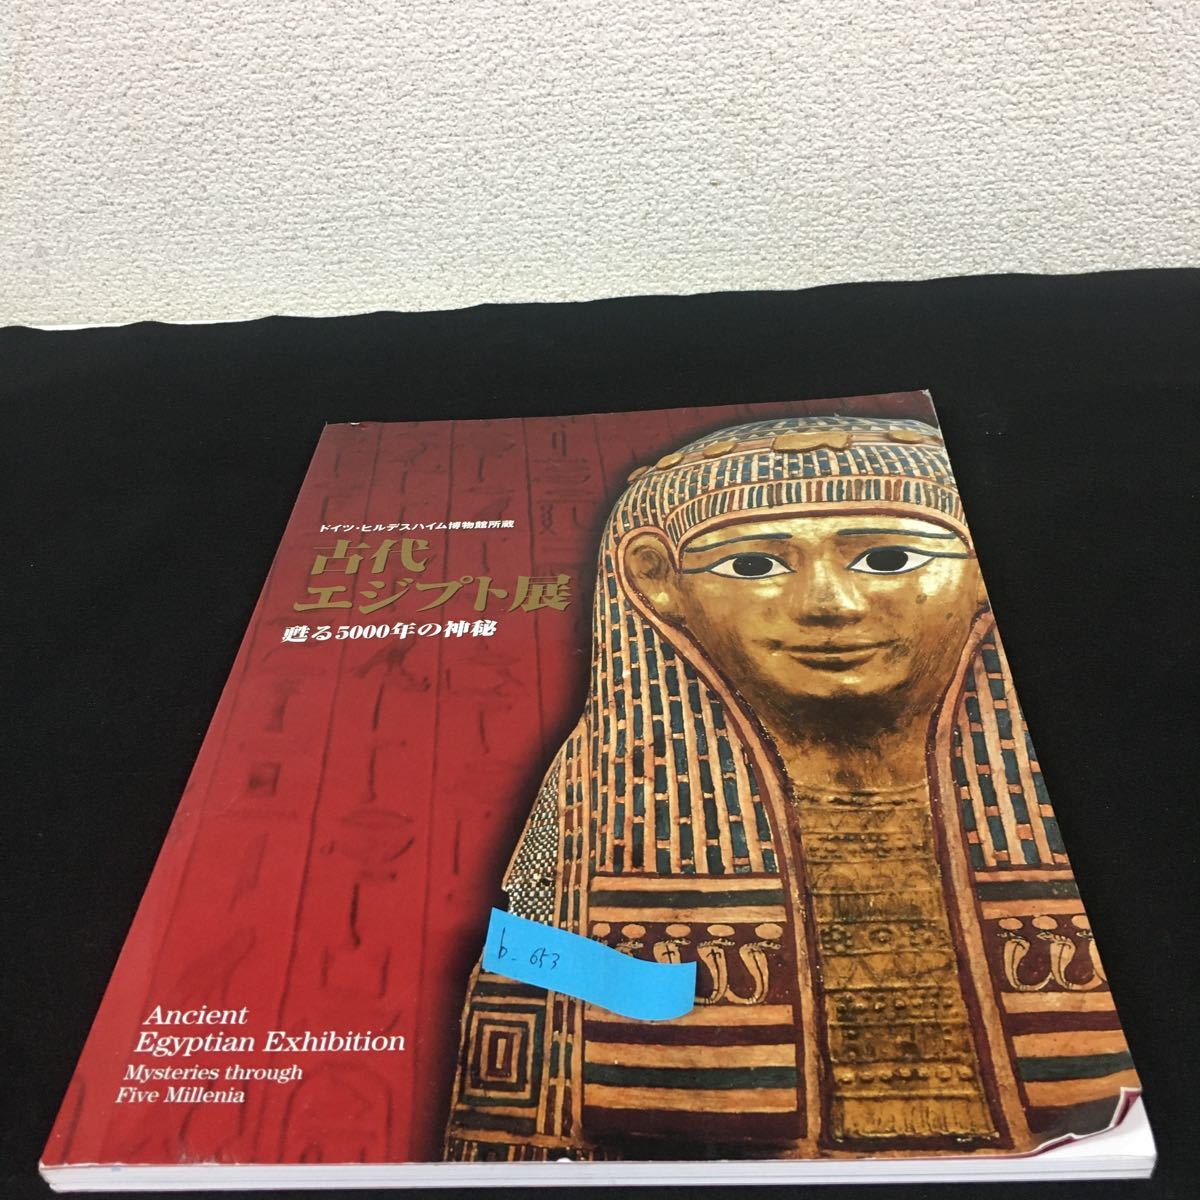 b-653※5 Ausstellung zum Alten Ägypten: 5000 Jahre voller Geheimnisse aus dem Hildesheimer Museum in Deutschland, Malerei, Kunstbuch, Sammlung, Katalog